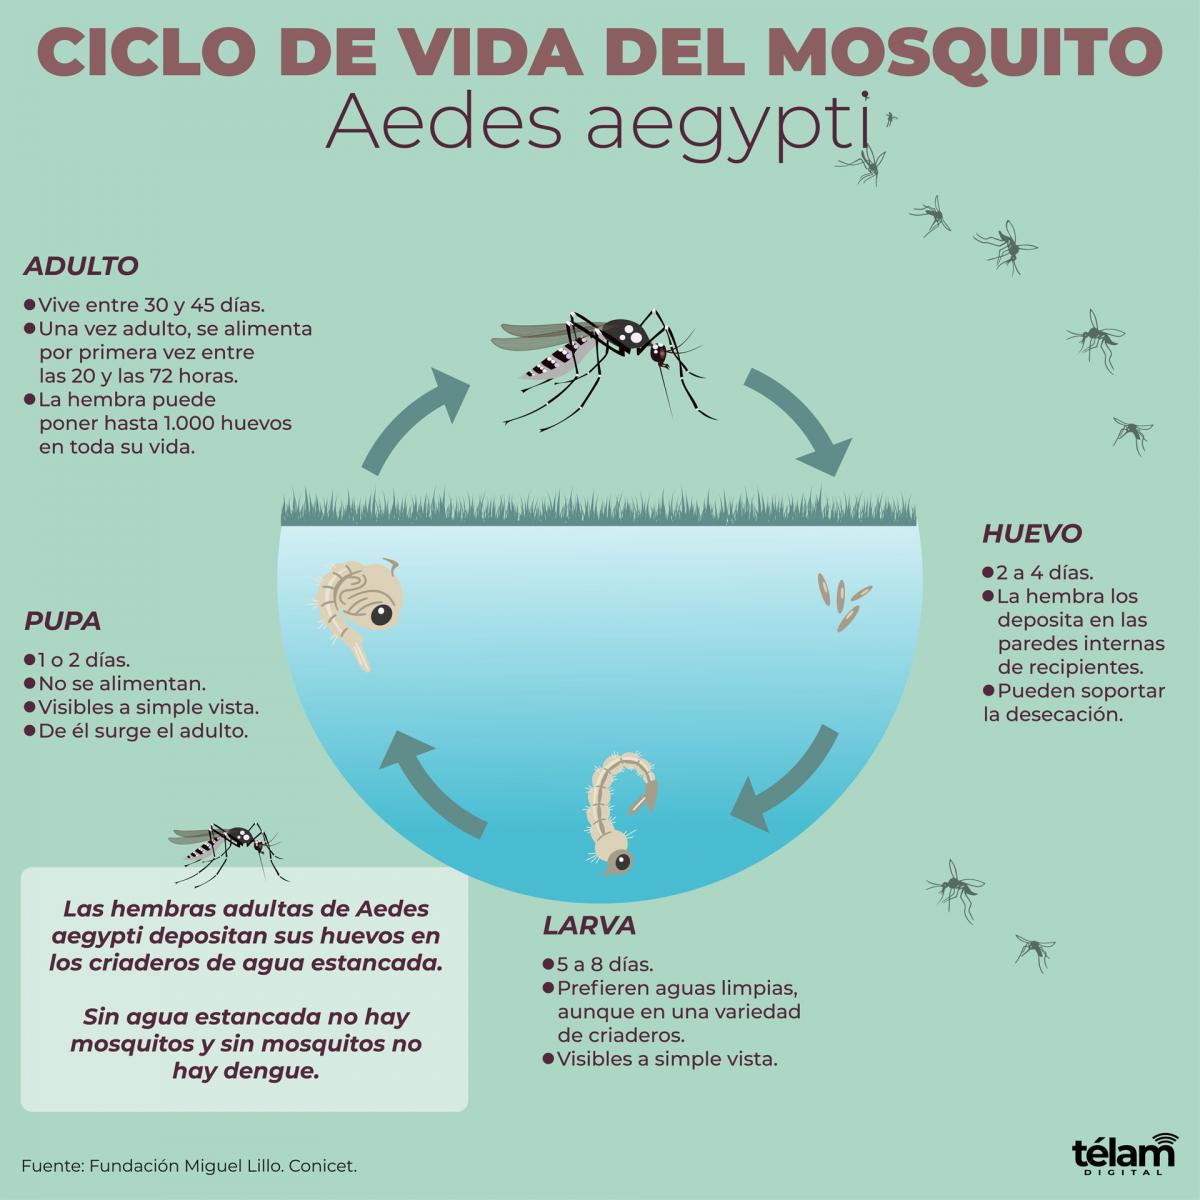 Eliminar los criaderos de mosquitos y no automedicarse, entre las claves contra el dengue imagen-4